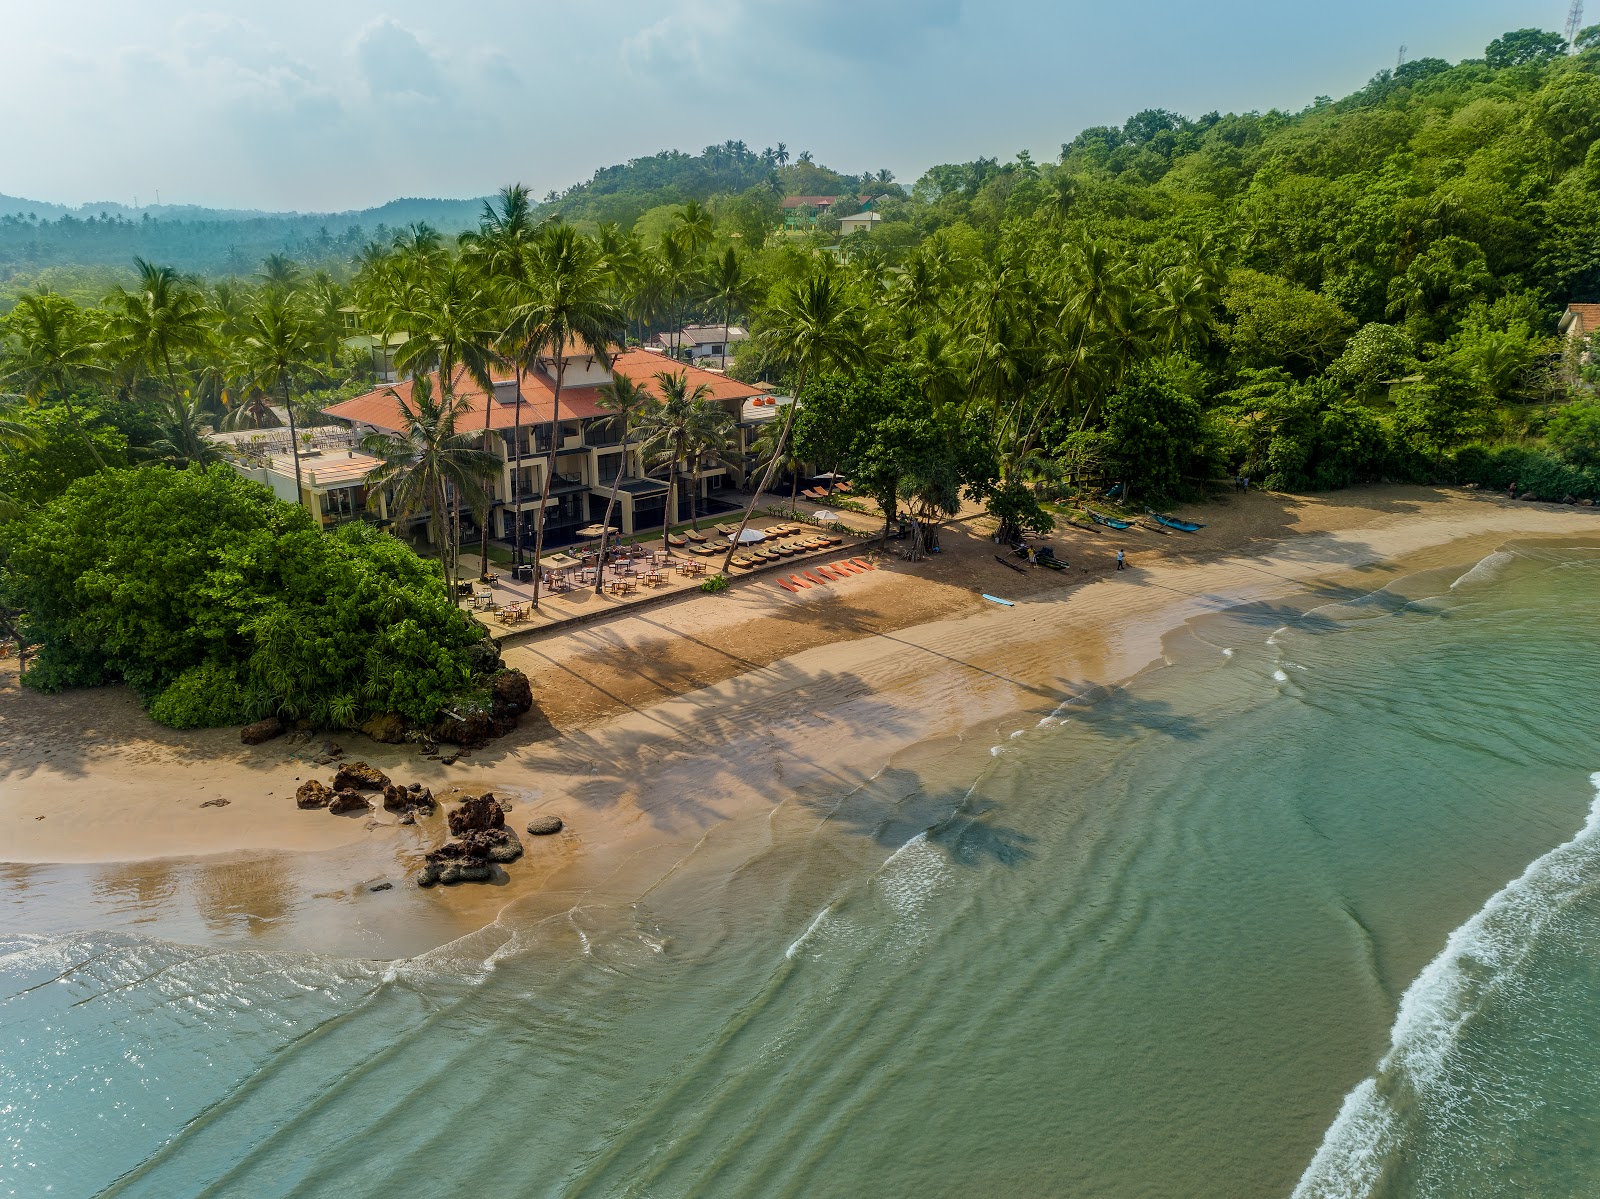 Photo de CocoBay beach - endroit populaire parmi les connaisseurs de la détente